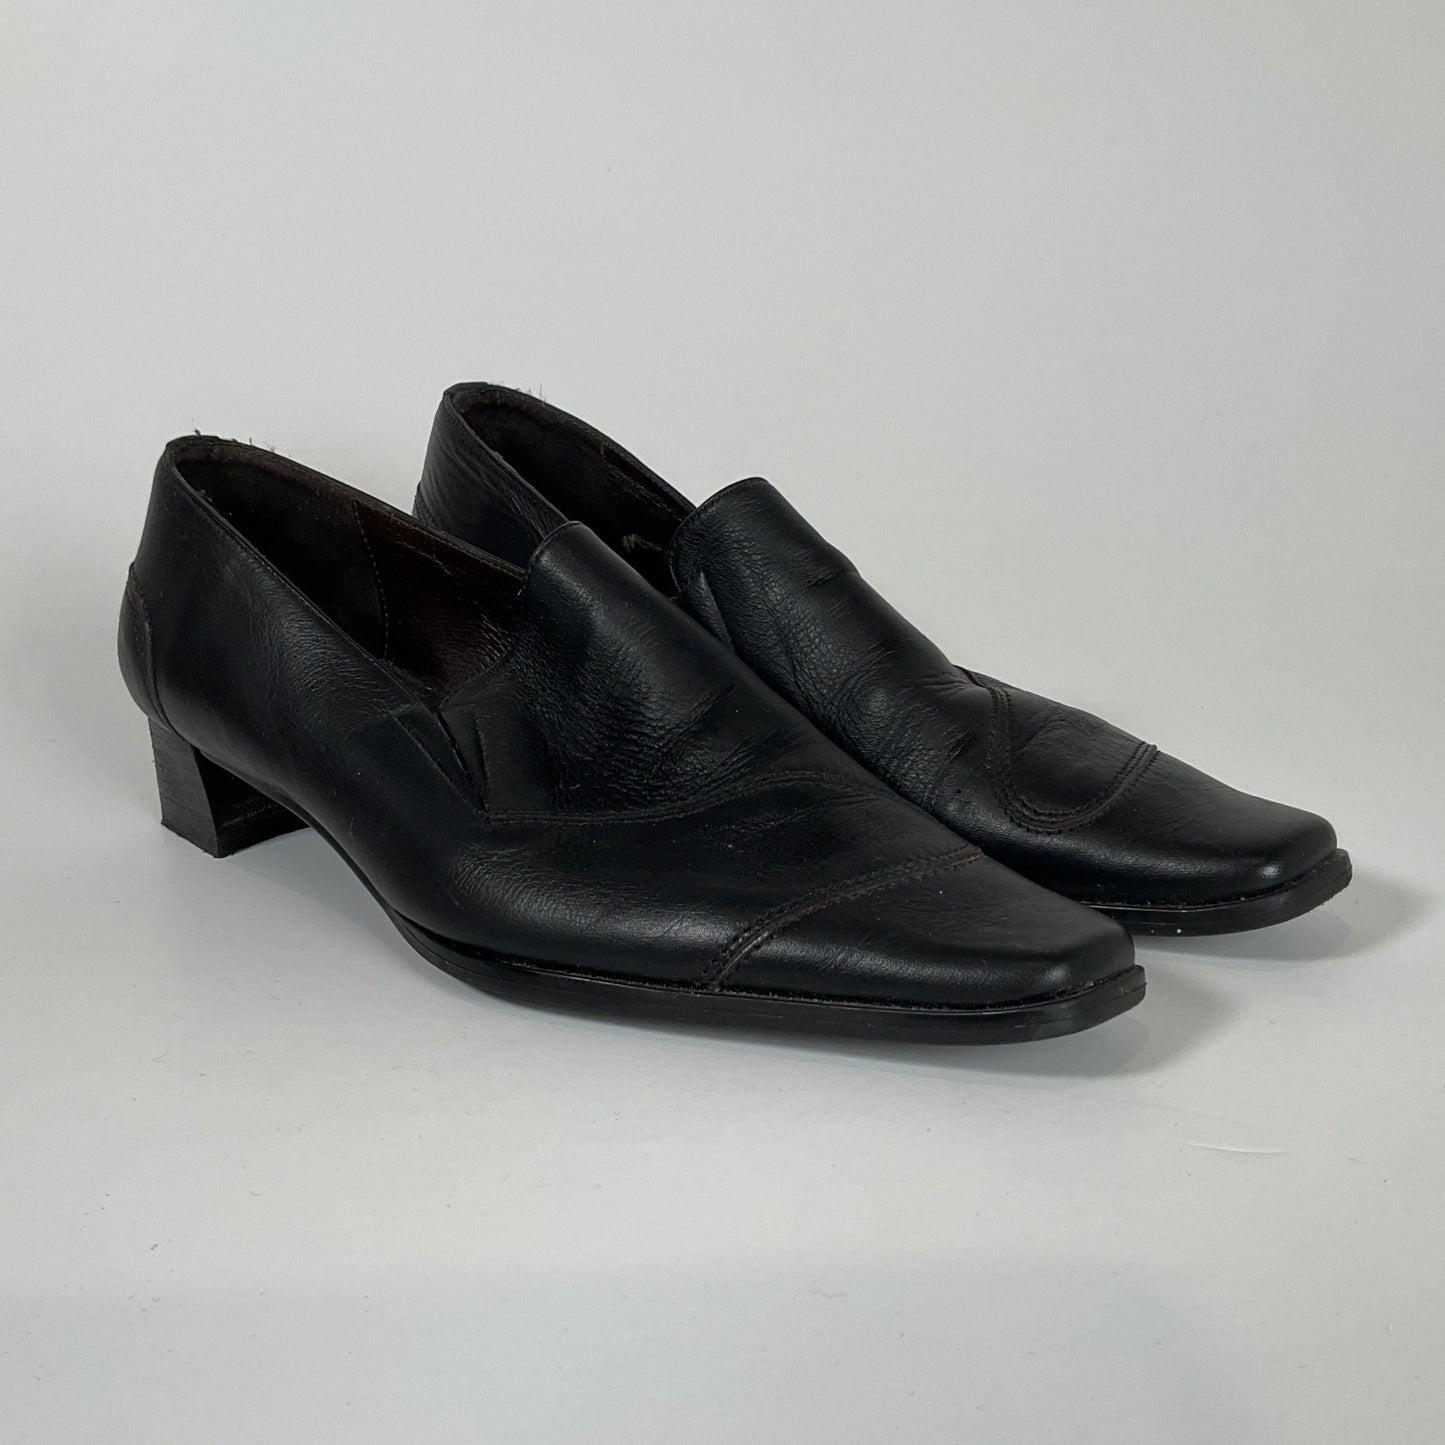 Hispanitas - Black Low Heels Size 36 Shoes